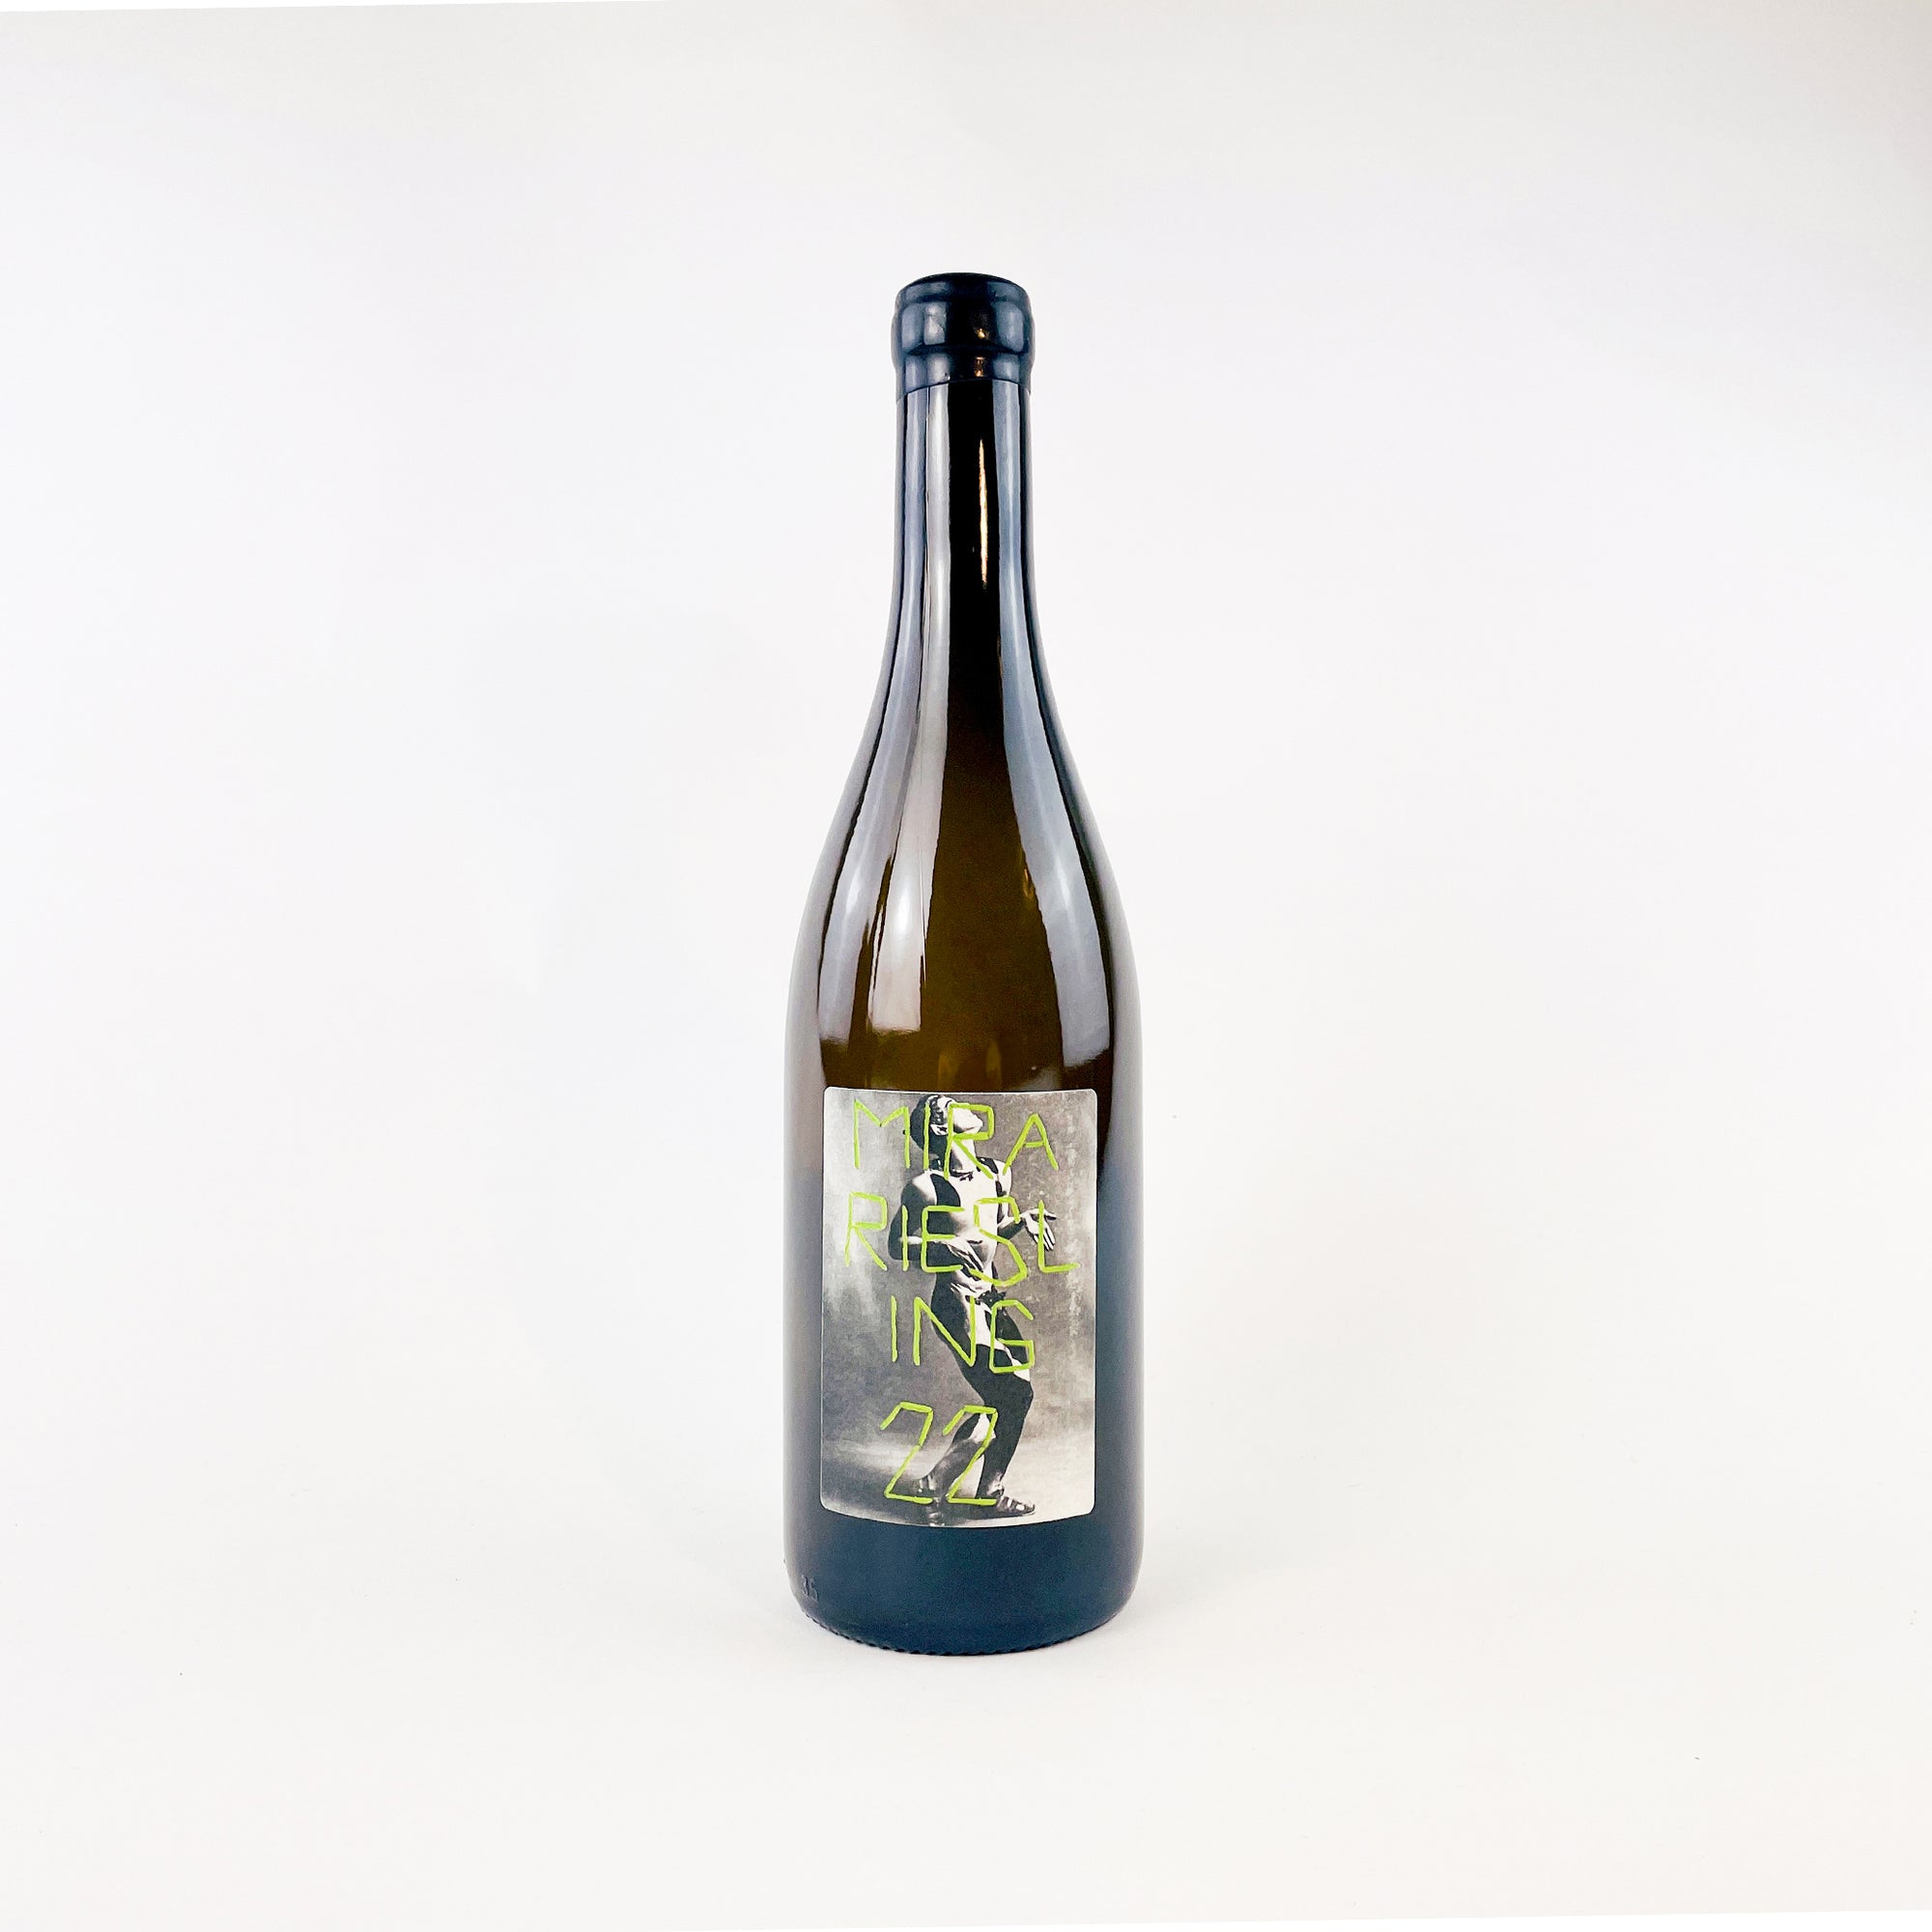 MIRA Nestarec Riesling Natural White Wine Naturwein Weißwein bottle front view